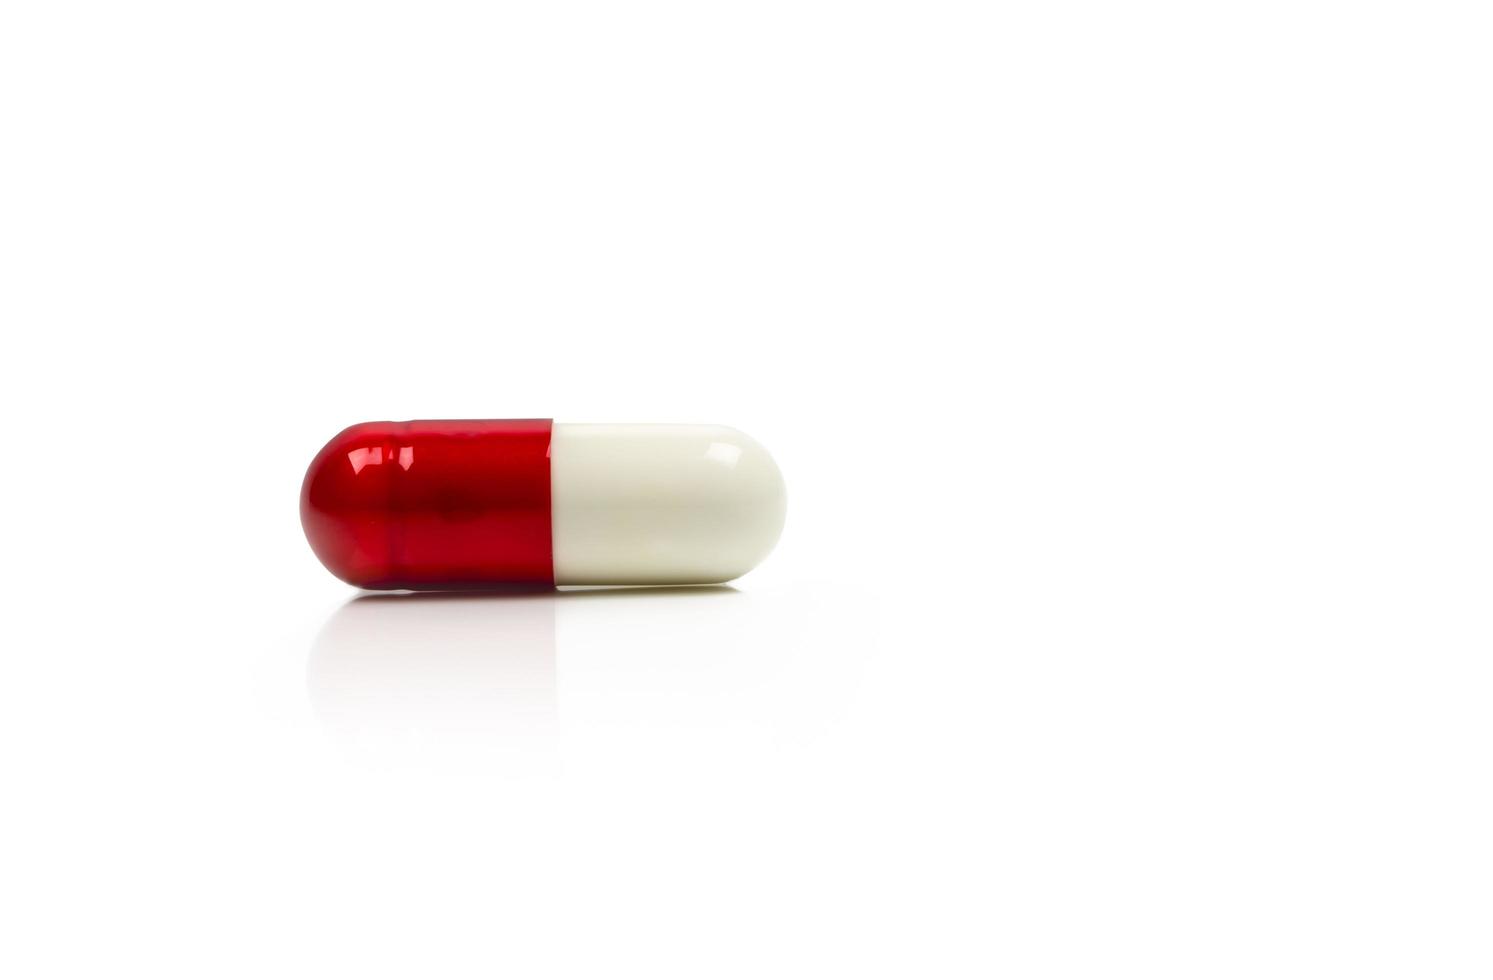 röd, vit antibiotika kapsel piller isolerad på vit bakgrund med kopia utrymme. läkemedelsresistens koncept. antibiotikadroganvändning med rimligt och globalt hälsokoncept. foto